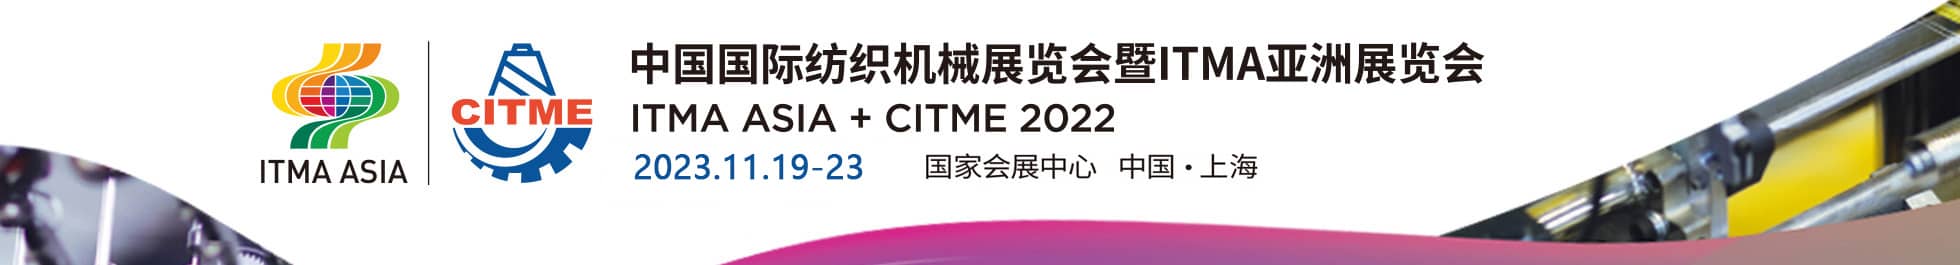 2020中国国际纺织机械展览会暨ITMA亚洲展览会信息验证